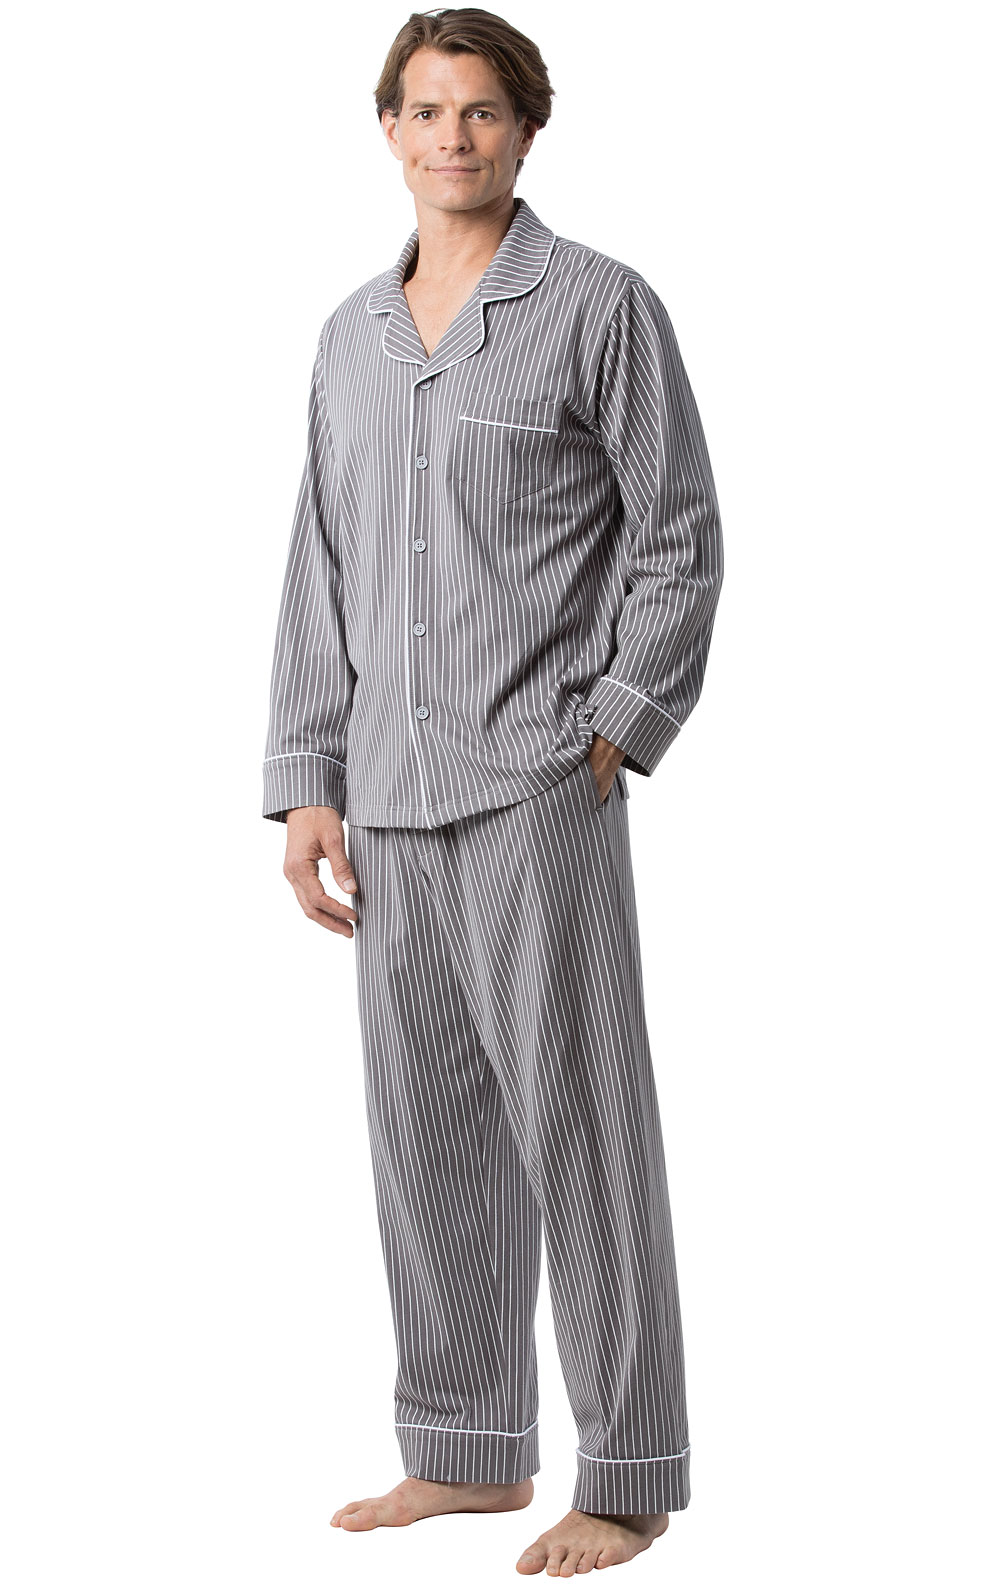 Pajamas Size Chart